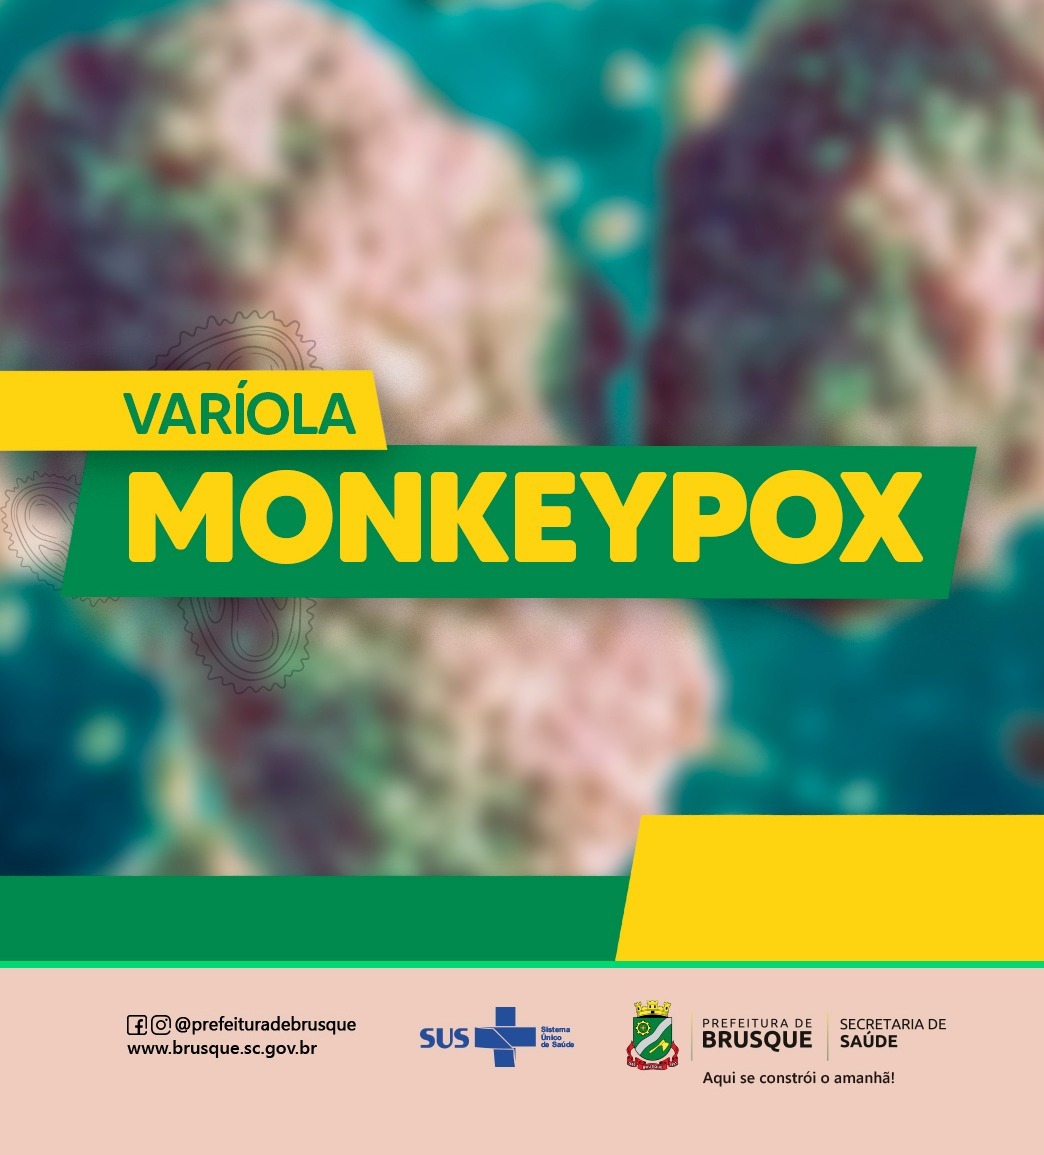 Monkeypox: Varíola dos macacos e primatas não possuem correlação